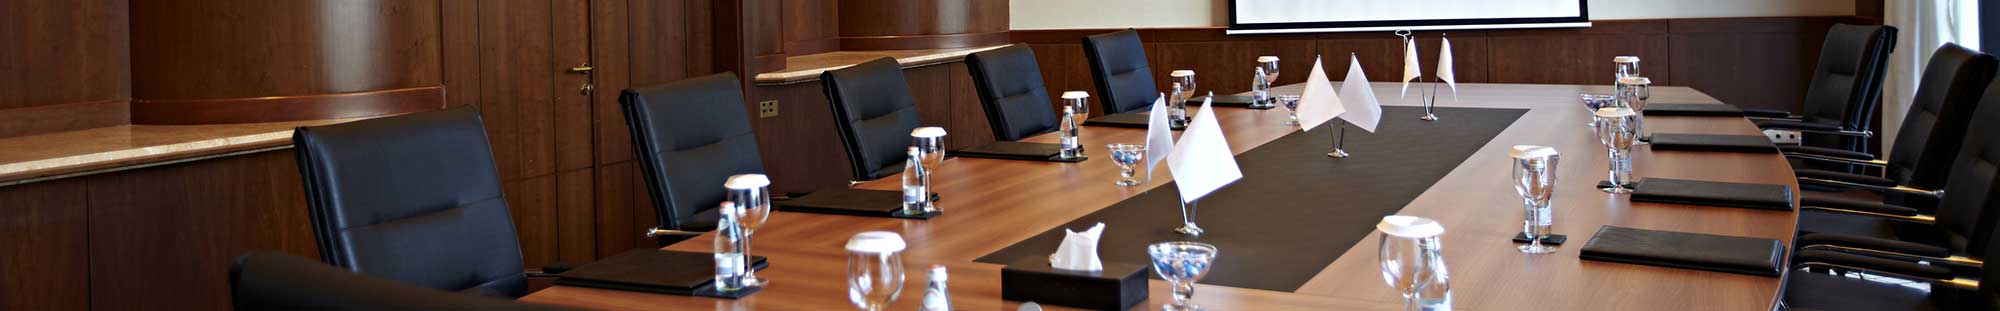 a boardroom